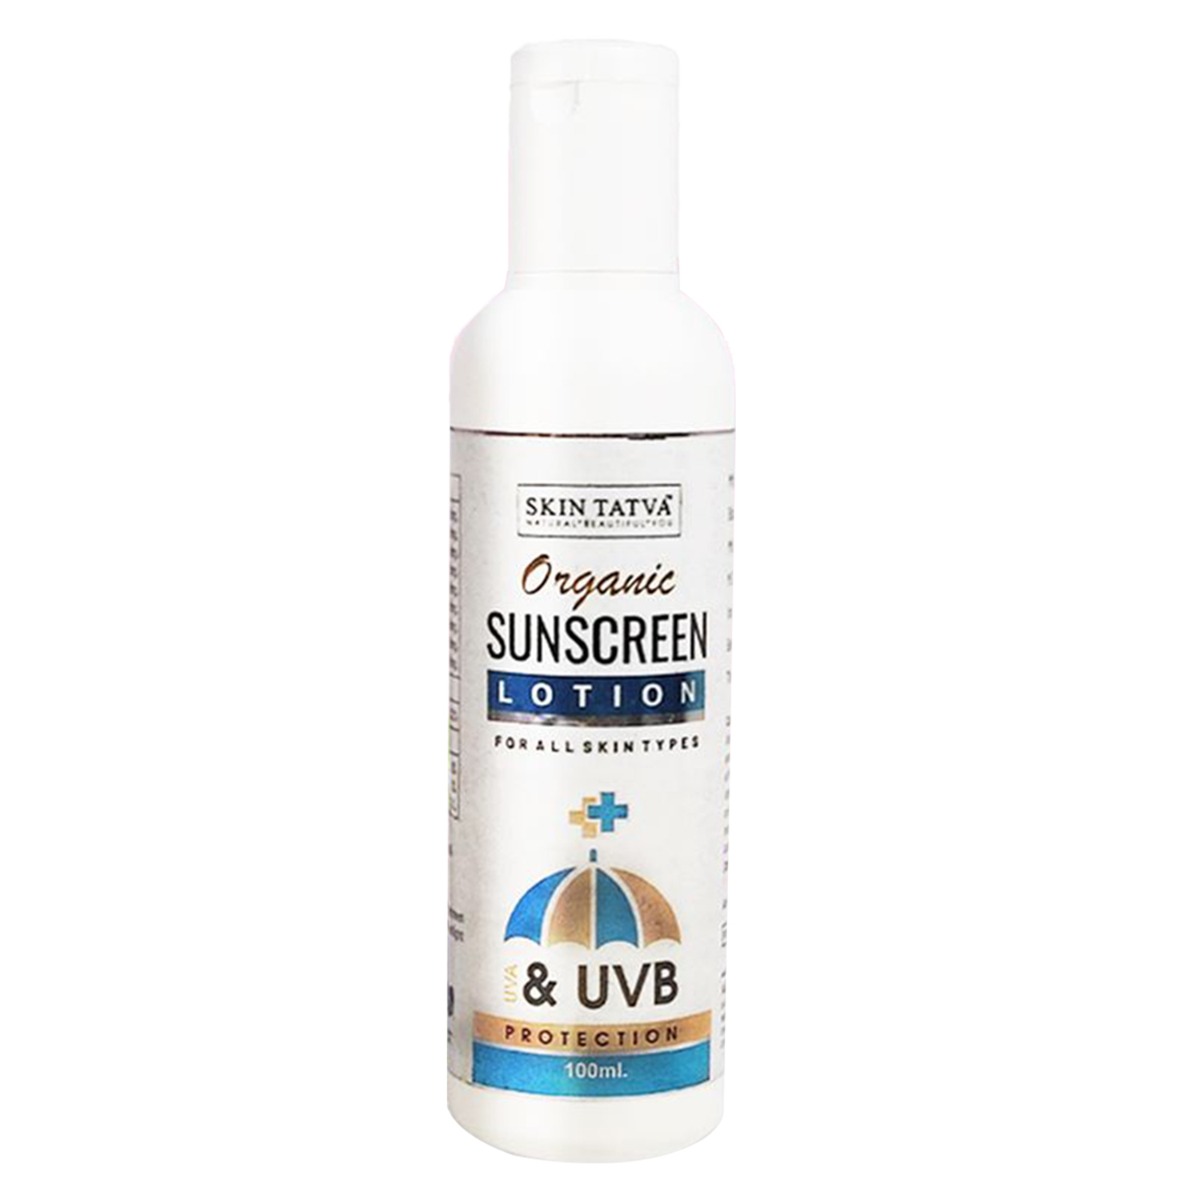 Skin Tatva Sunscreen Lotion, 100ml